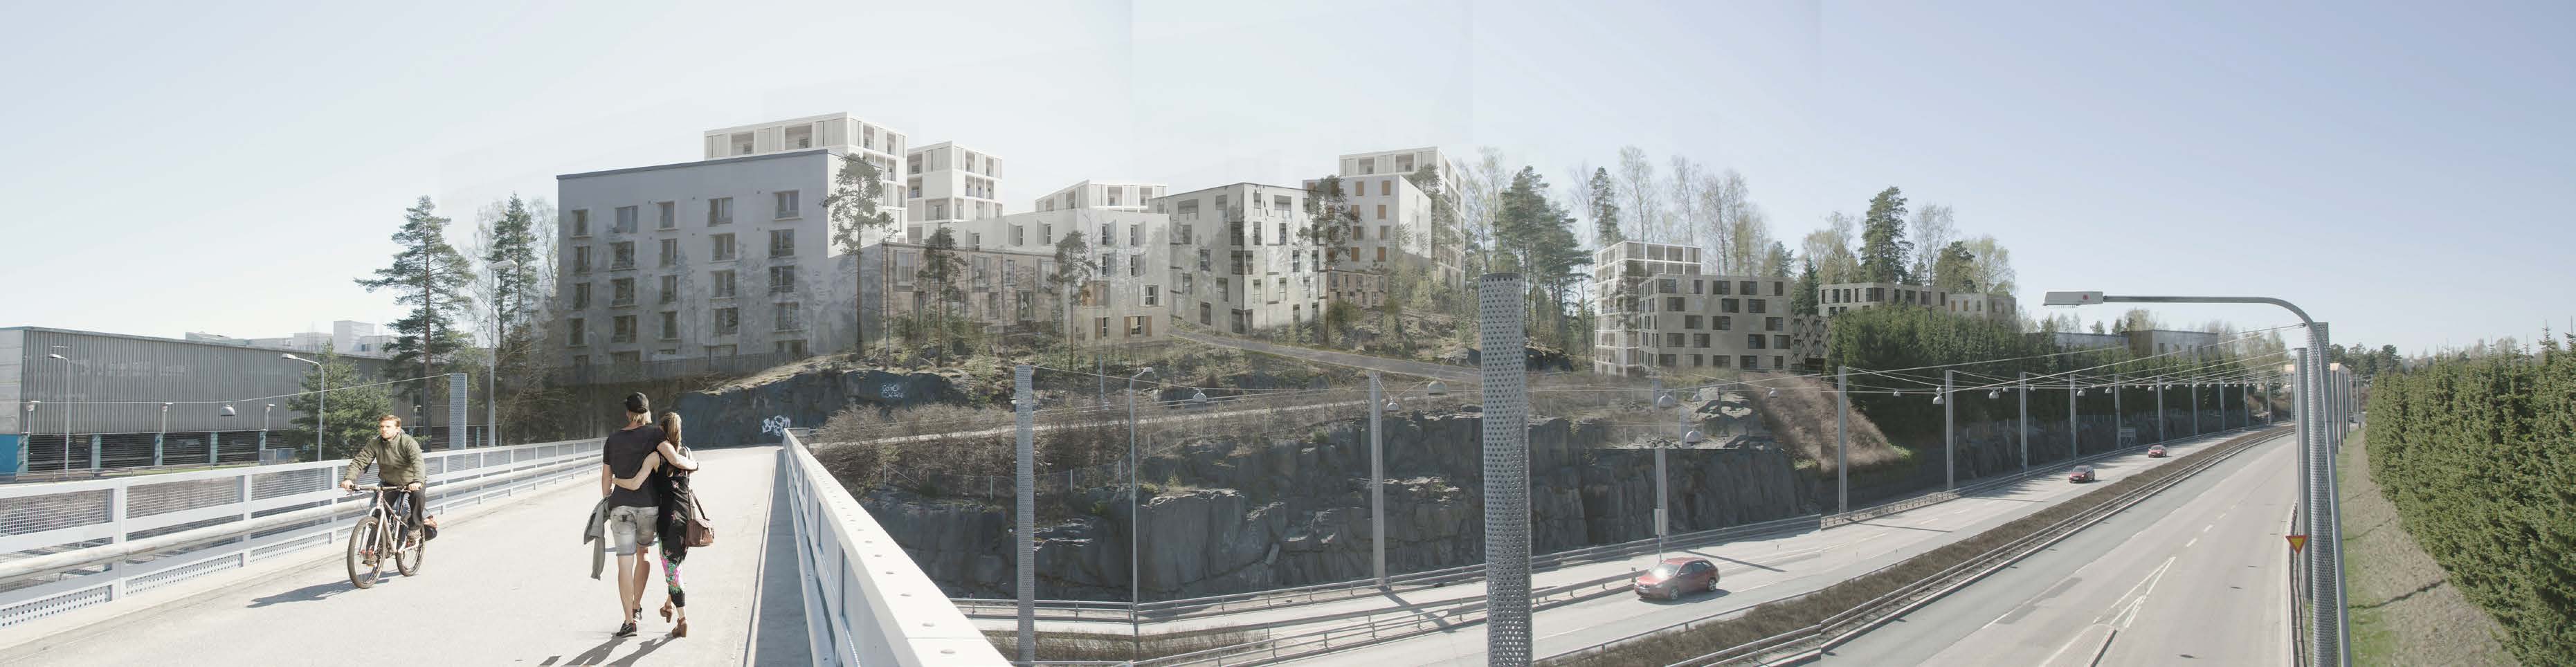 Pohjavedenpuisto Haruspuisto Pohjavedenpuistoon on suunniteltu täydennysrakentamista. Rakentaminen sijoittuu puiston laidoille siten, että keskellä oleva kallioalue jää virkistyskäyttöön.